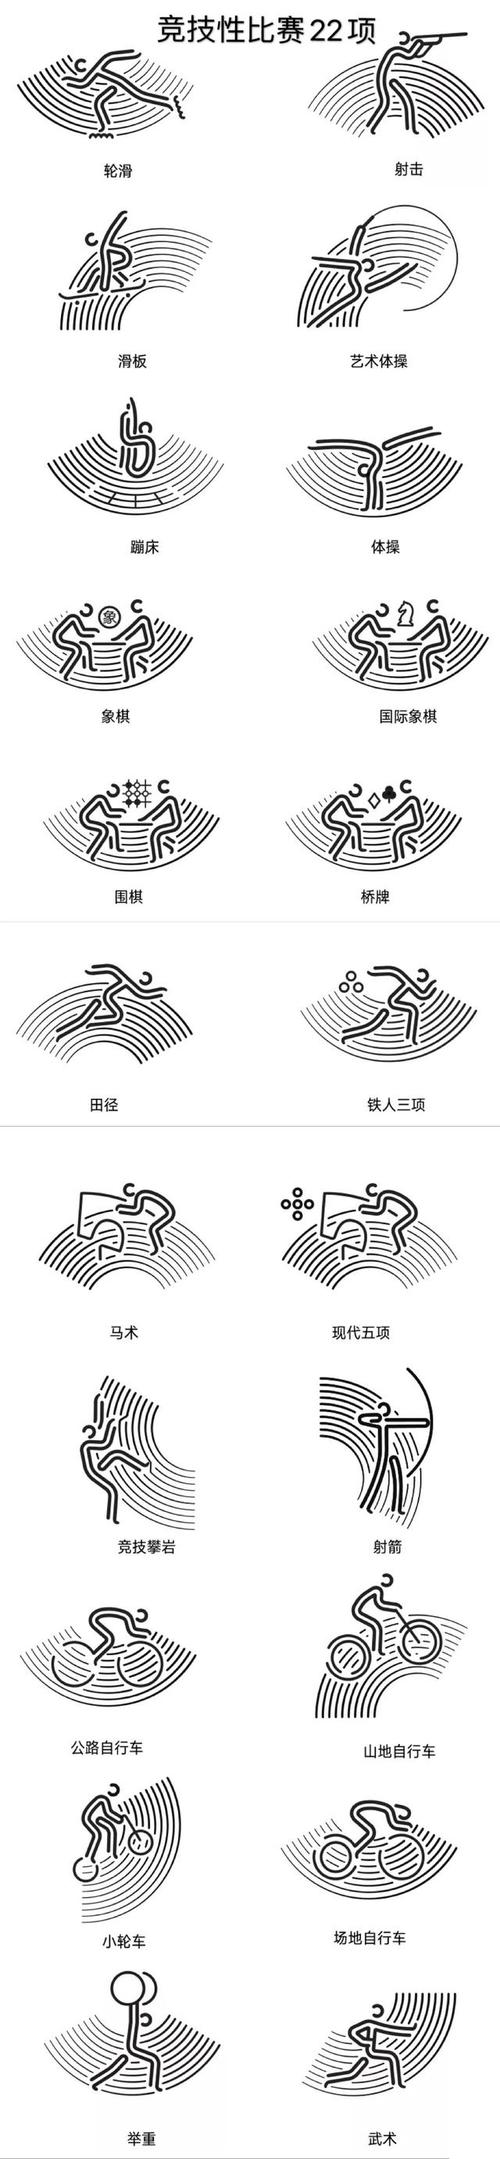 杭州亚运会体育图标今天发布